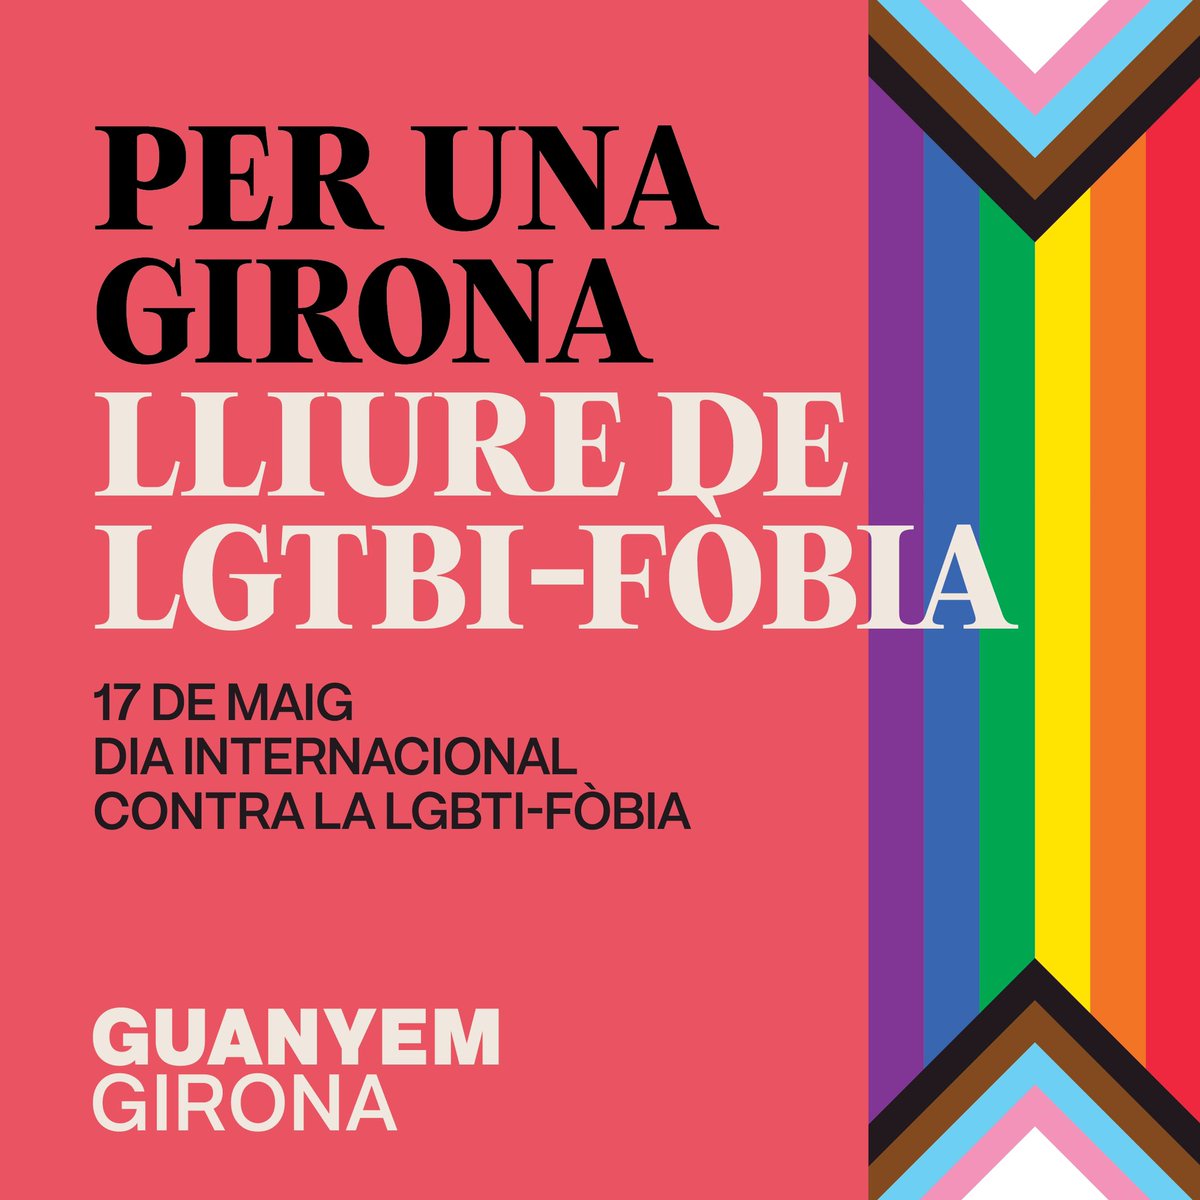 🌈🏳️‍⚧️ Per una Girona lliure de LGBTI-fòbia, seguim lluitant! 17 de maig - Dia Internacional contra la LGTBI-fòbia